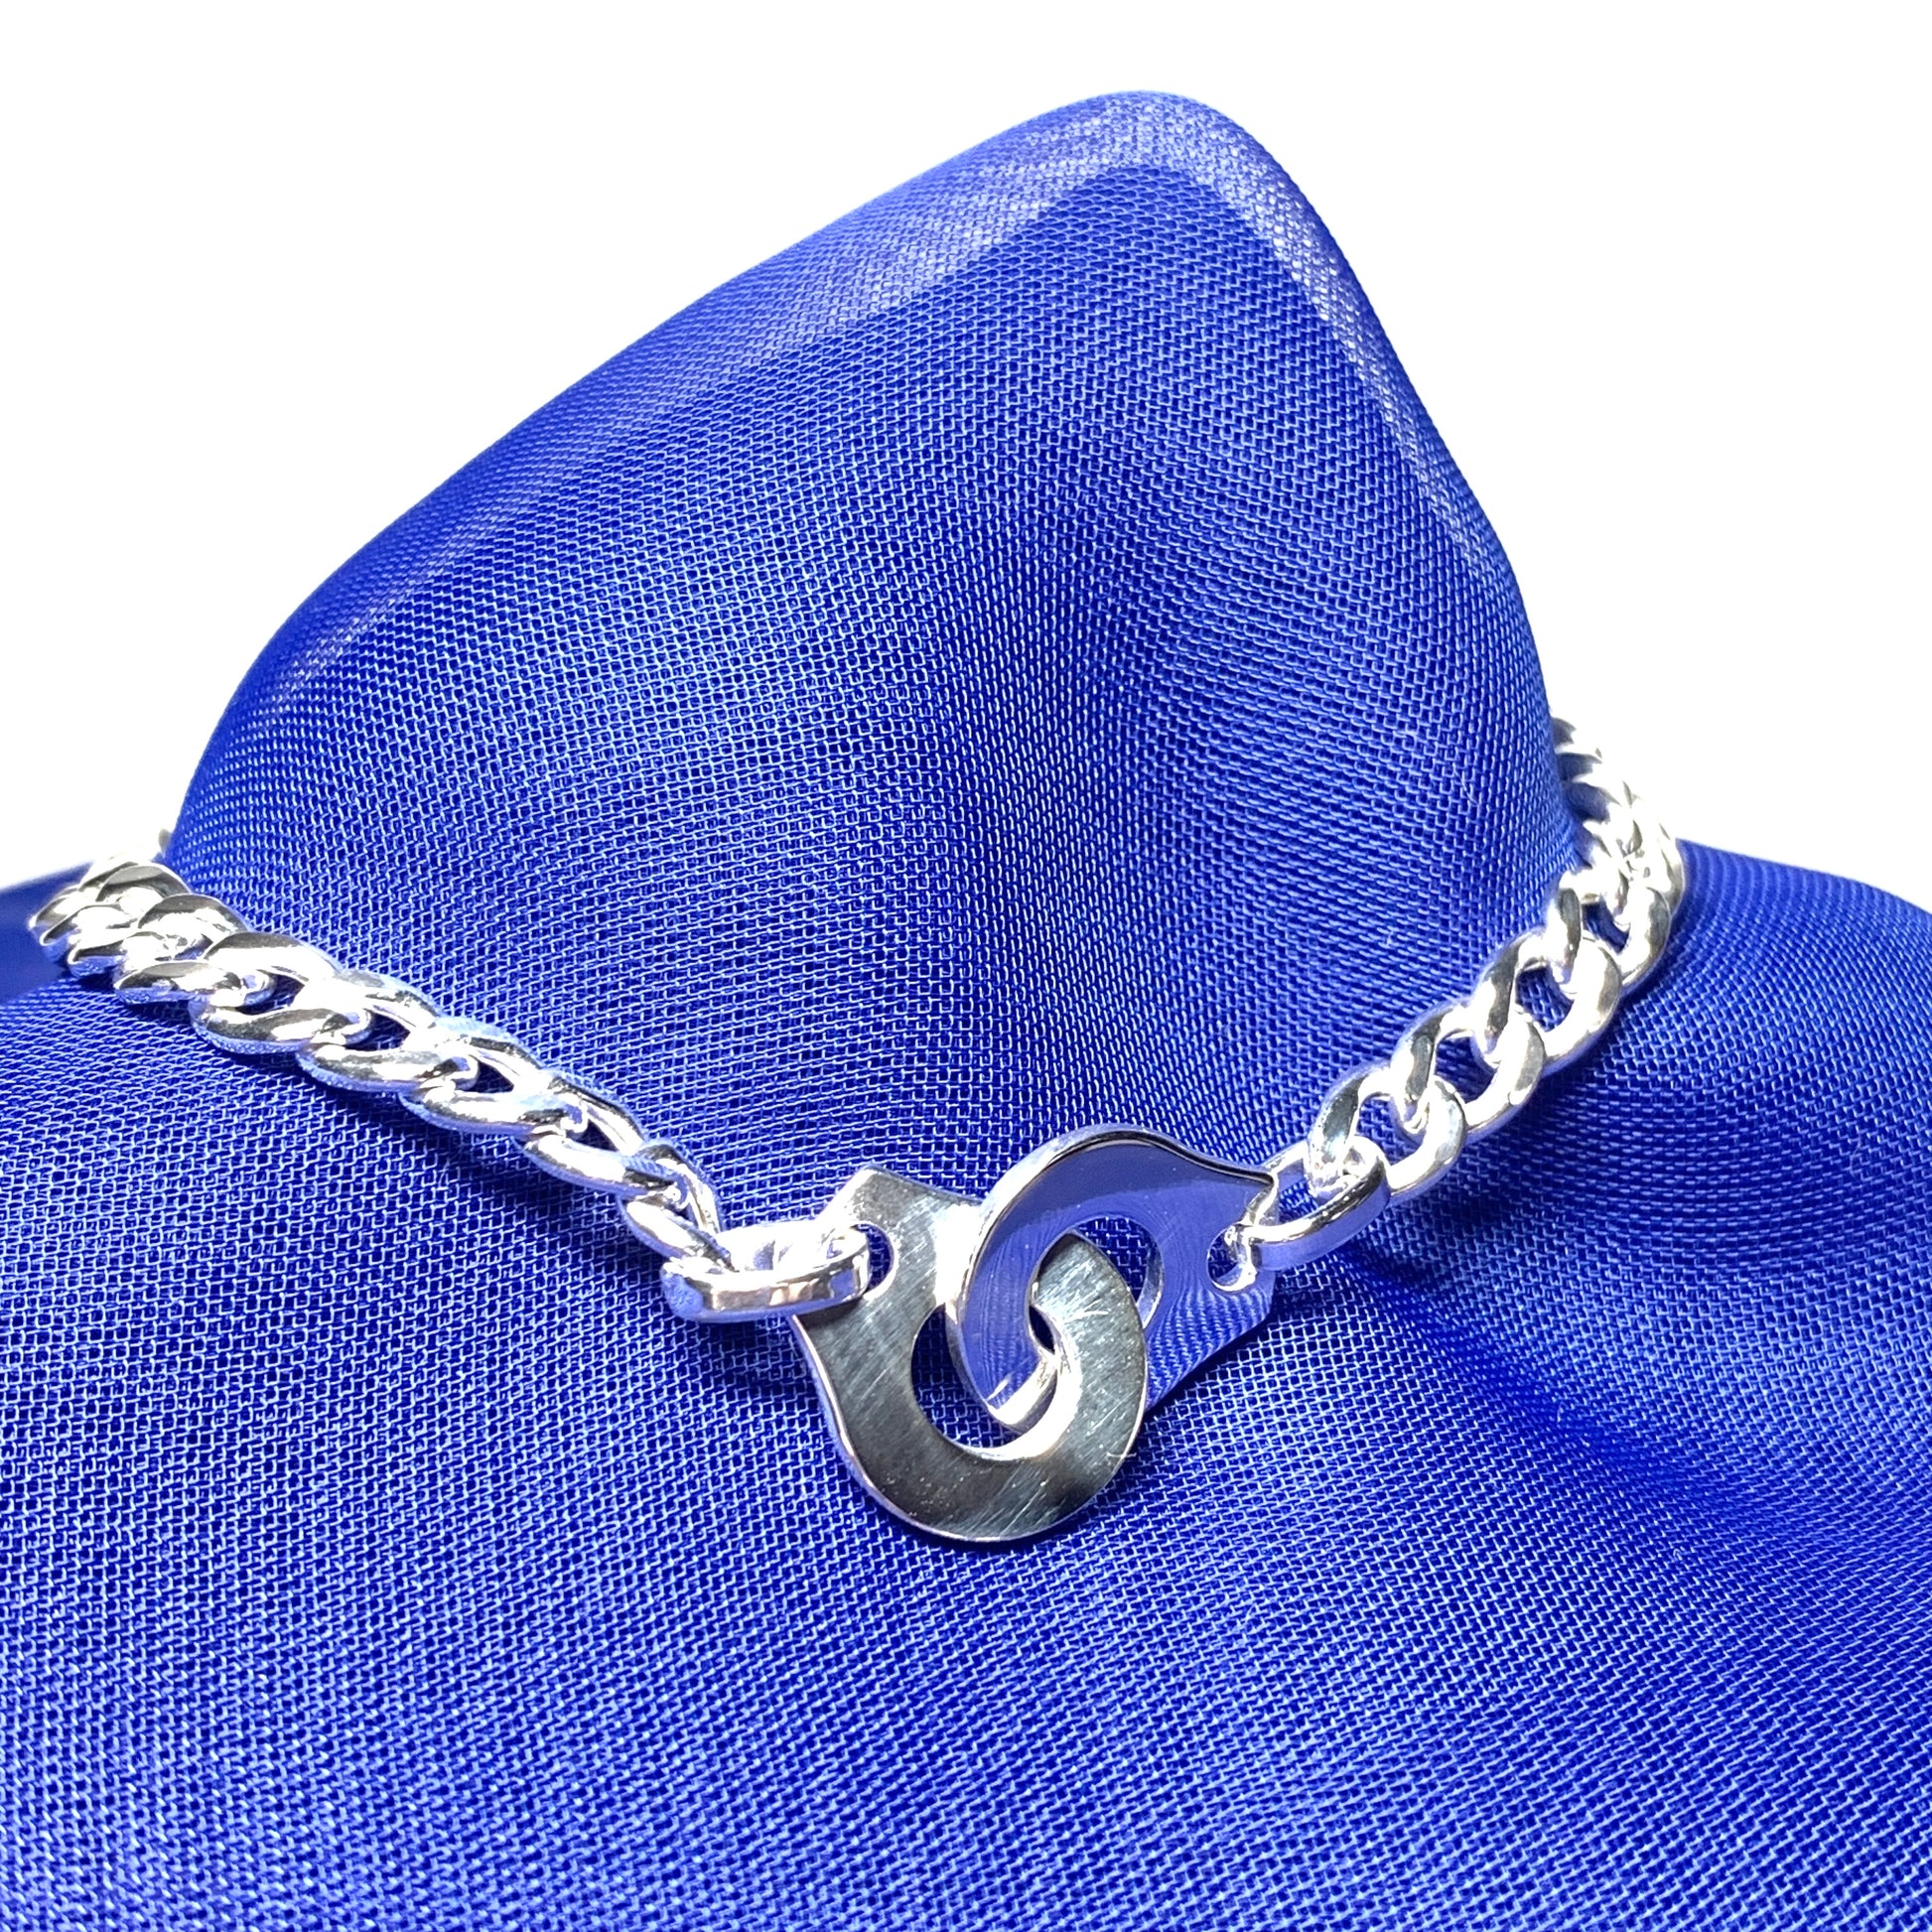 Ladies sterling silver curb link bracelet